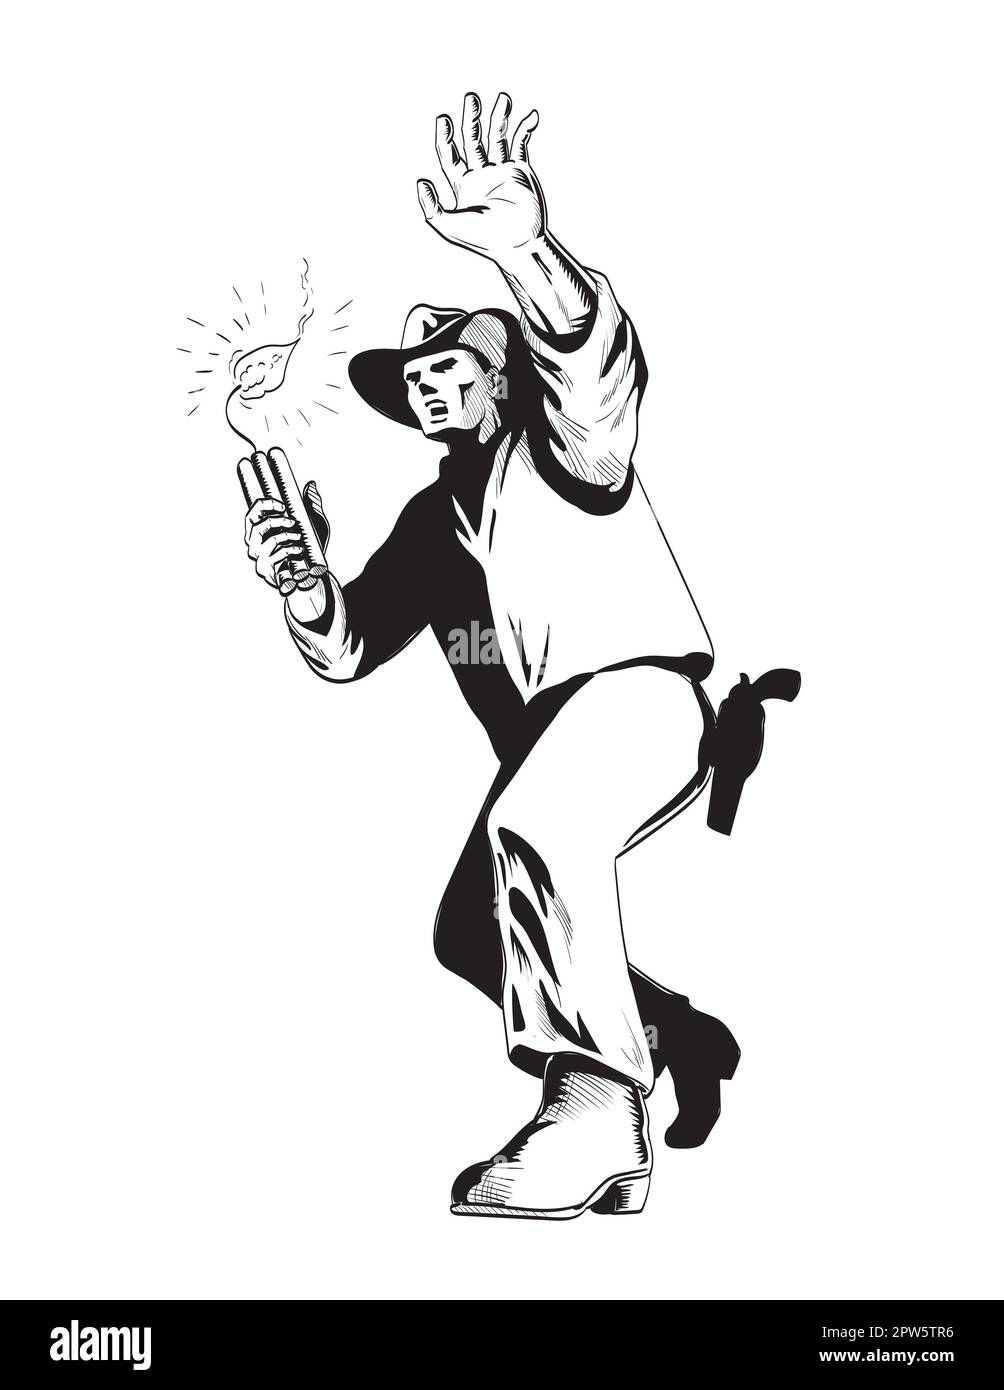 Comics-Zeichnung oder Illustration eines Cowboys, der einen Haufen Dynamitstäbchen oder TNT wirft, von vorne gesehen in einem niedrigen Winkel auf isoliertem Hintergrund i. Stockfoto